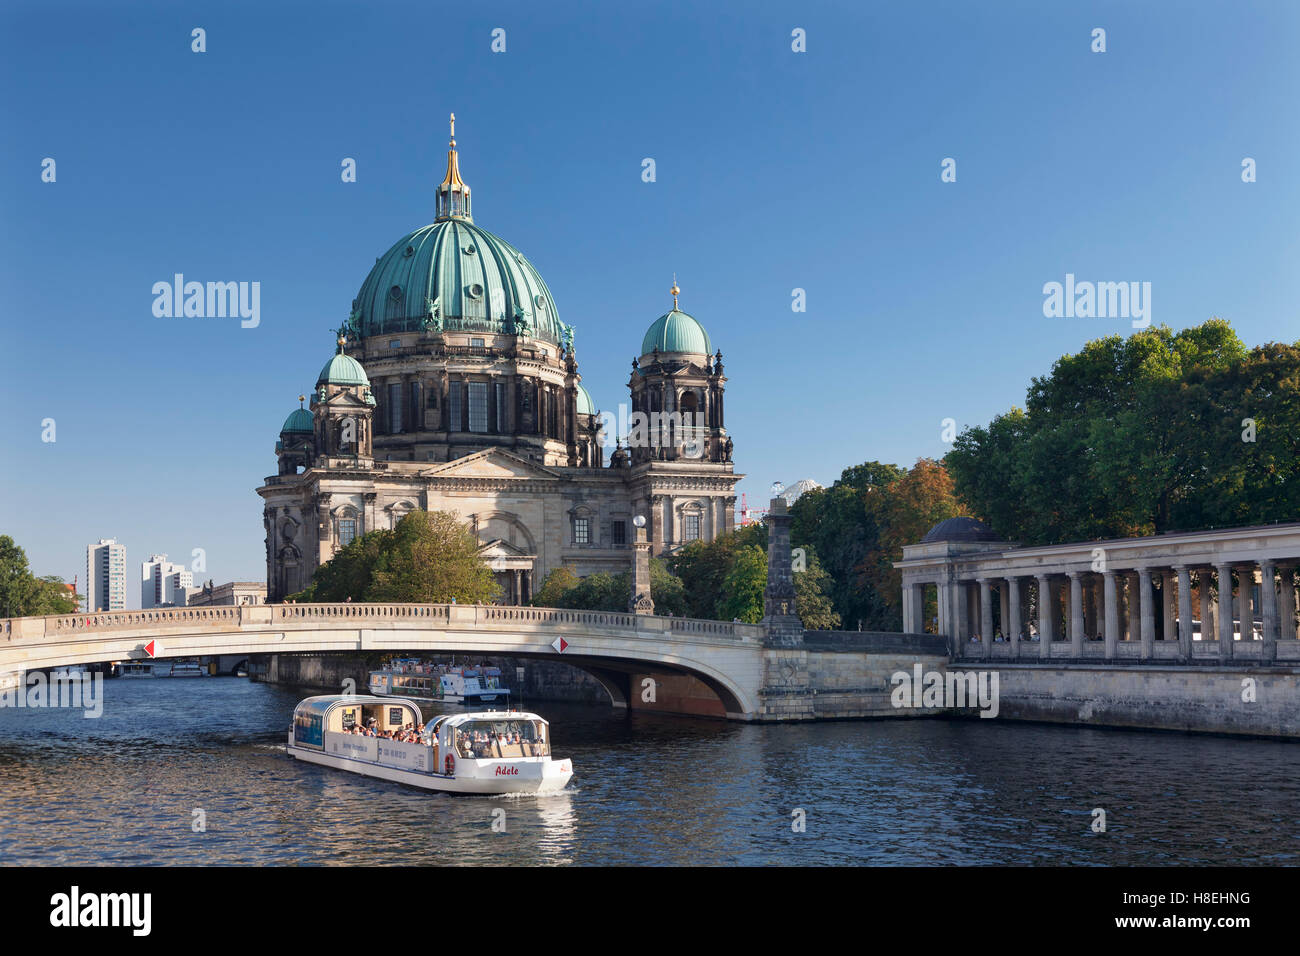 Bateau d'excursion sur la rivière Spree, le Berliner Dom (Cathédrale de Berlin), la rivière Spree, l'île aux musées, l'UNESCO, Mitte, Berlin Banque D'Images